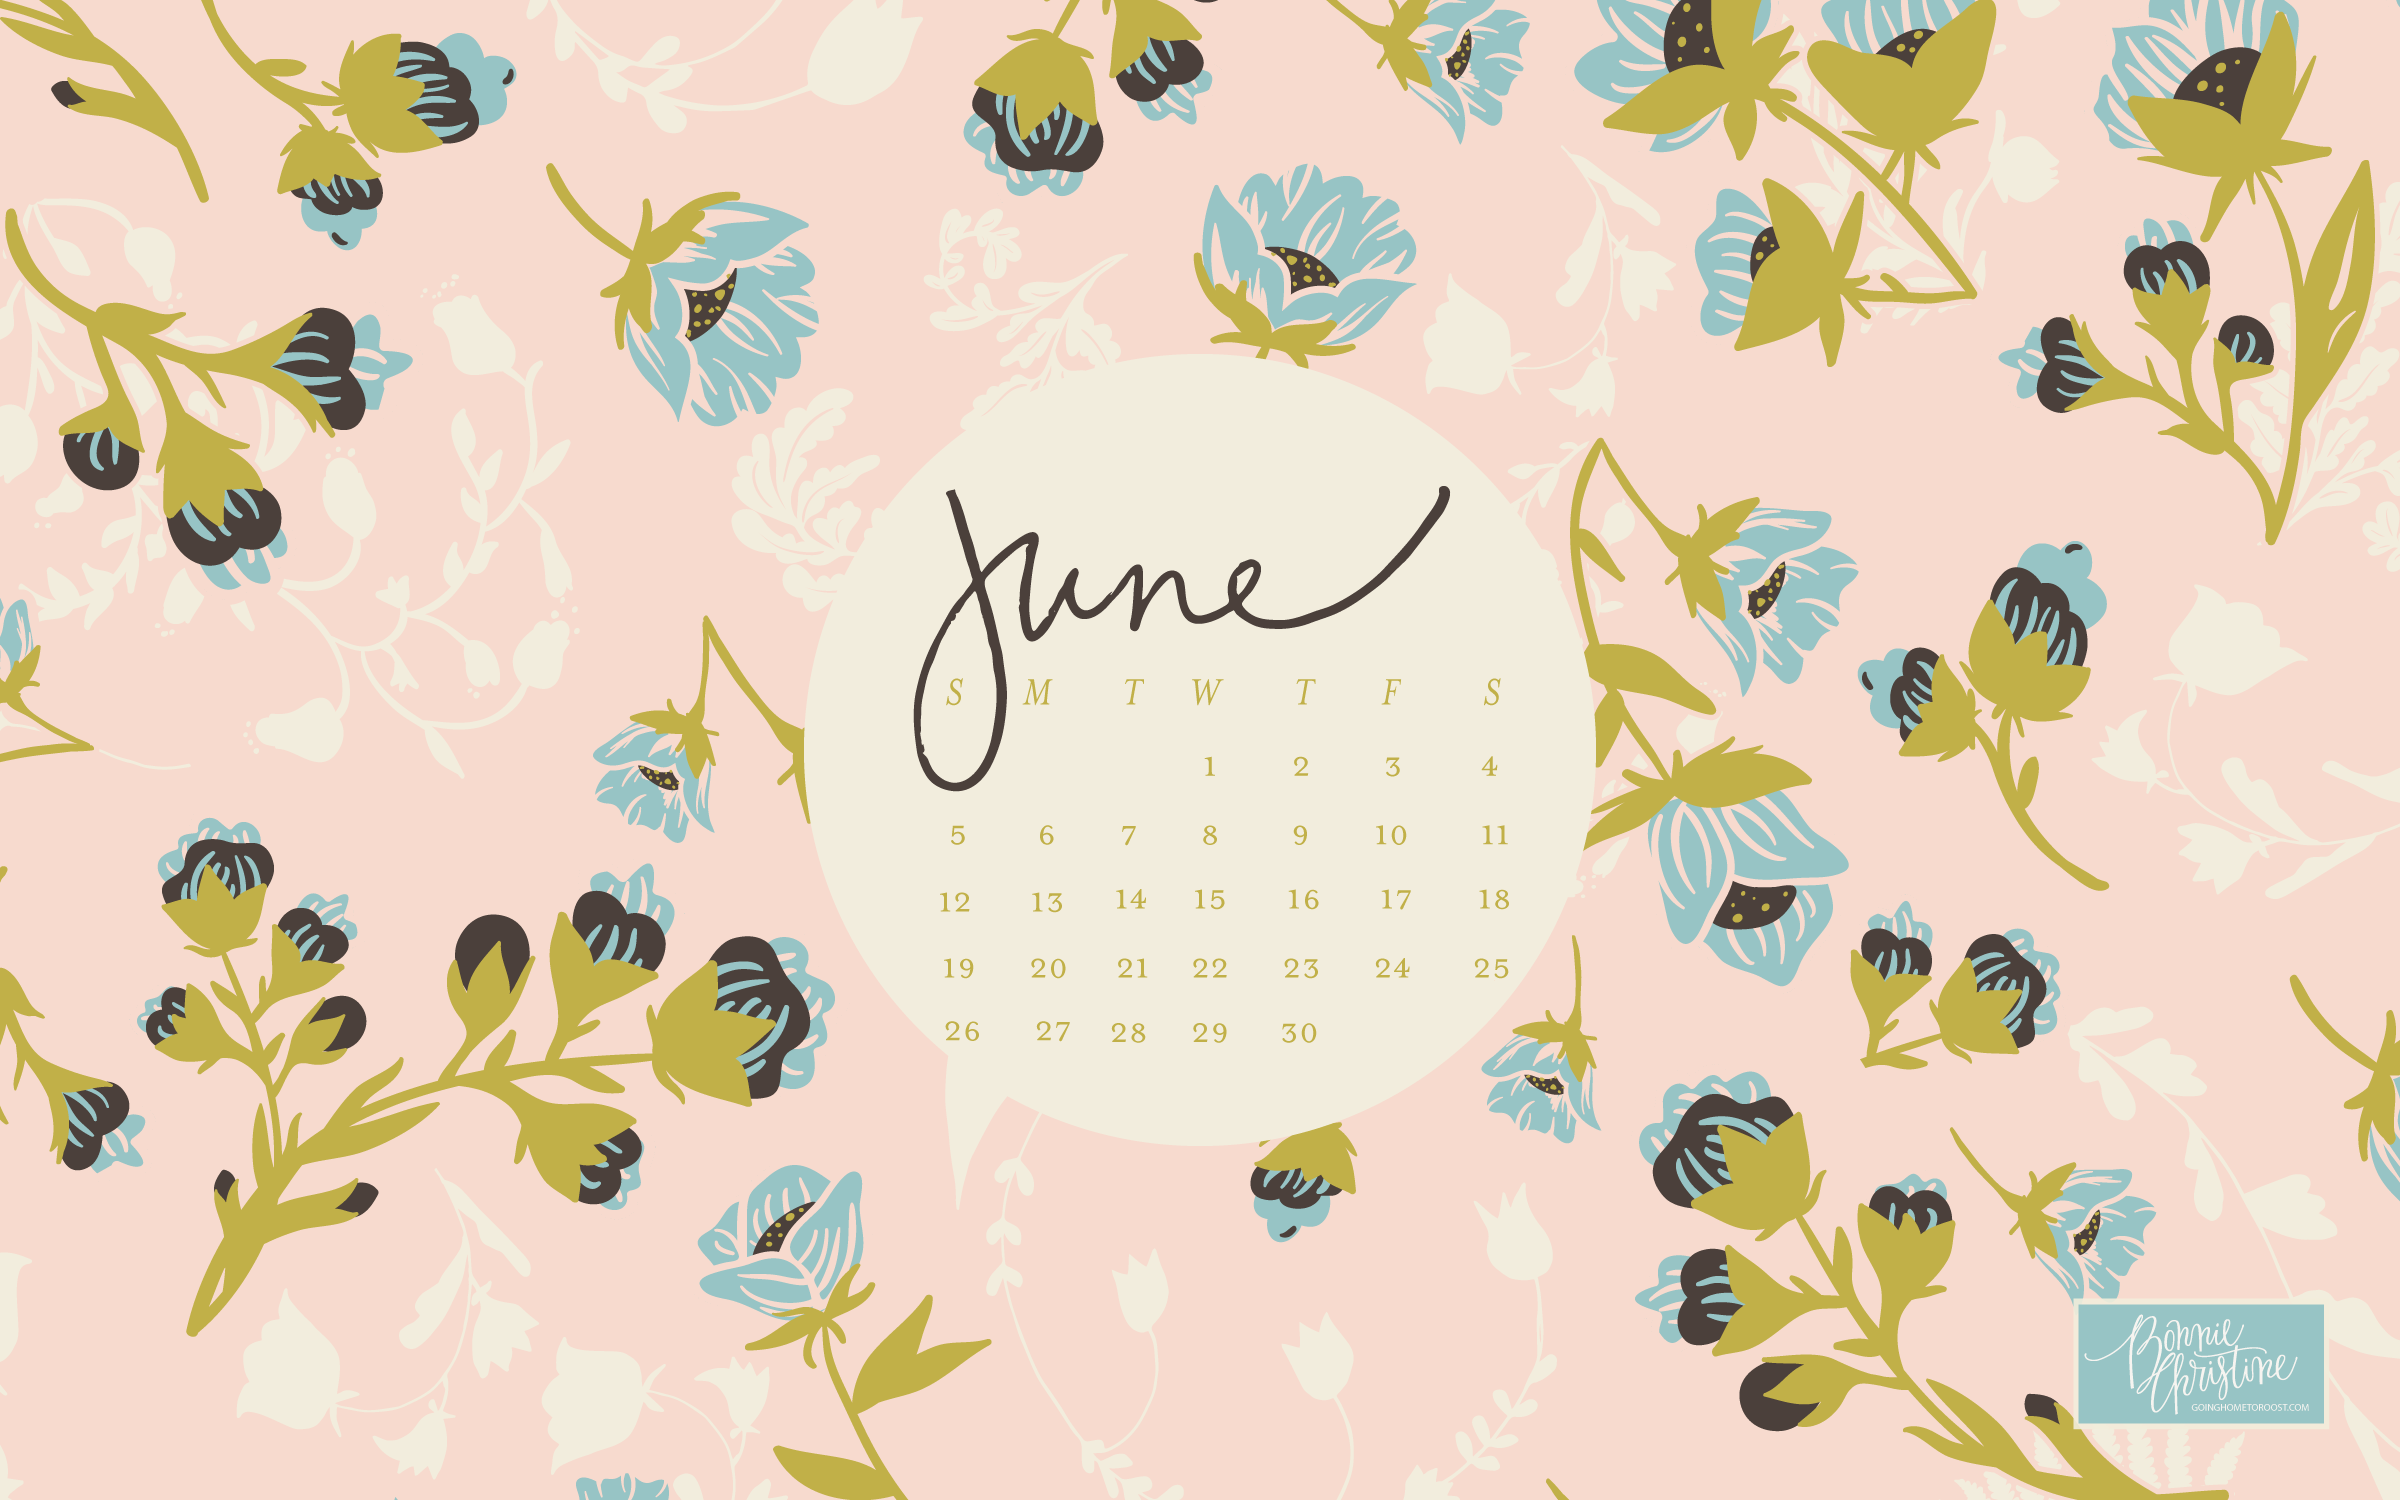 June 2016 Desktop Smart Phone Backgrounds - June 2018 Desktop Backgrounds , HD Wallpaper & Backgrounds